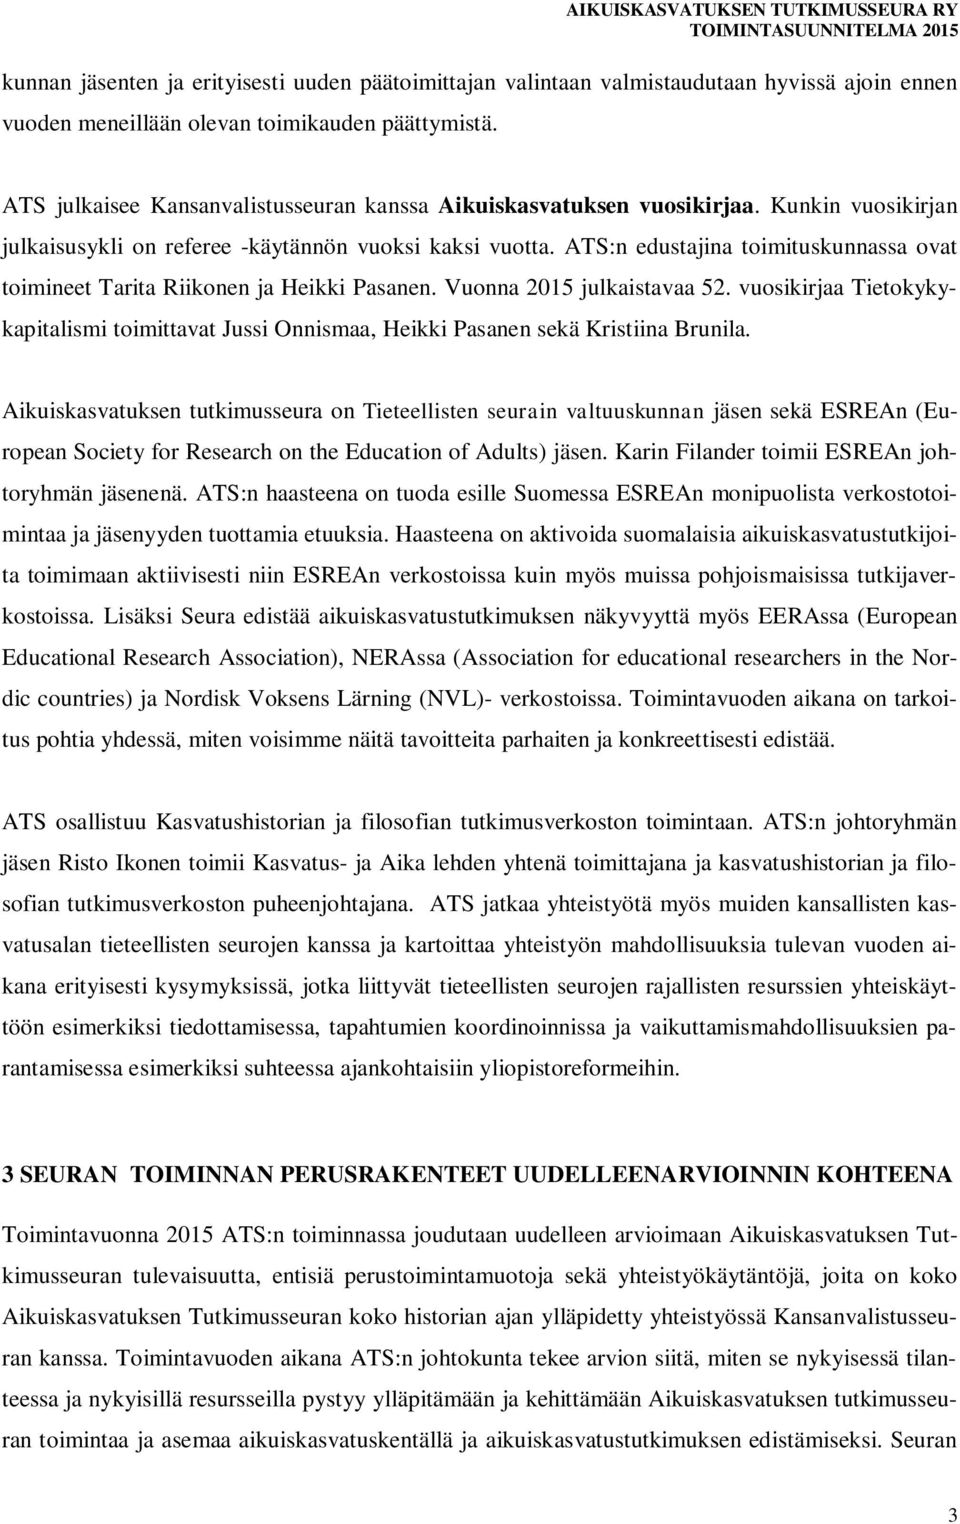 ATS:n edustajina toimituskunnassa ovat toimineet Tarita Riikonen ja Heikki Pasanen. Vuonna 2015 julkaistavaa 52.